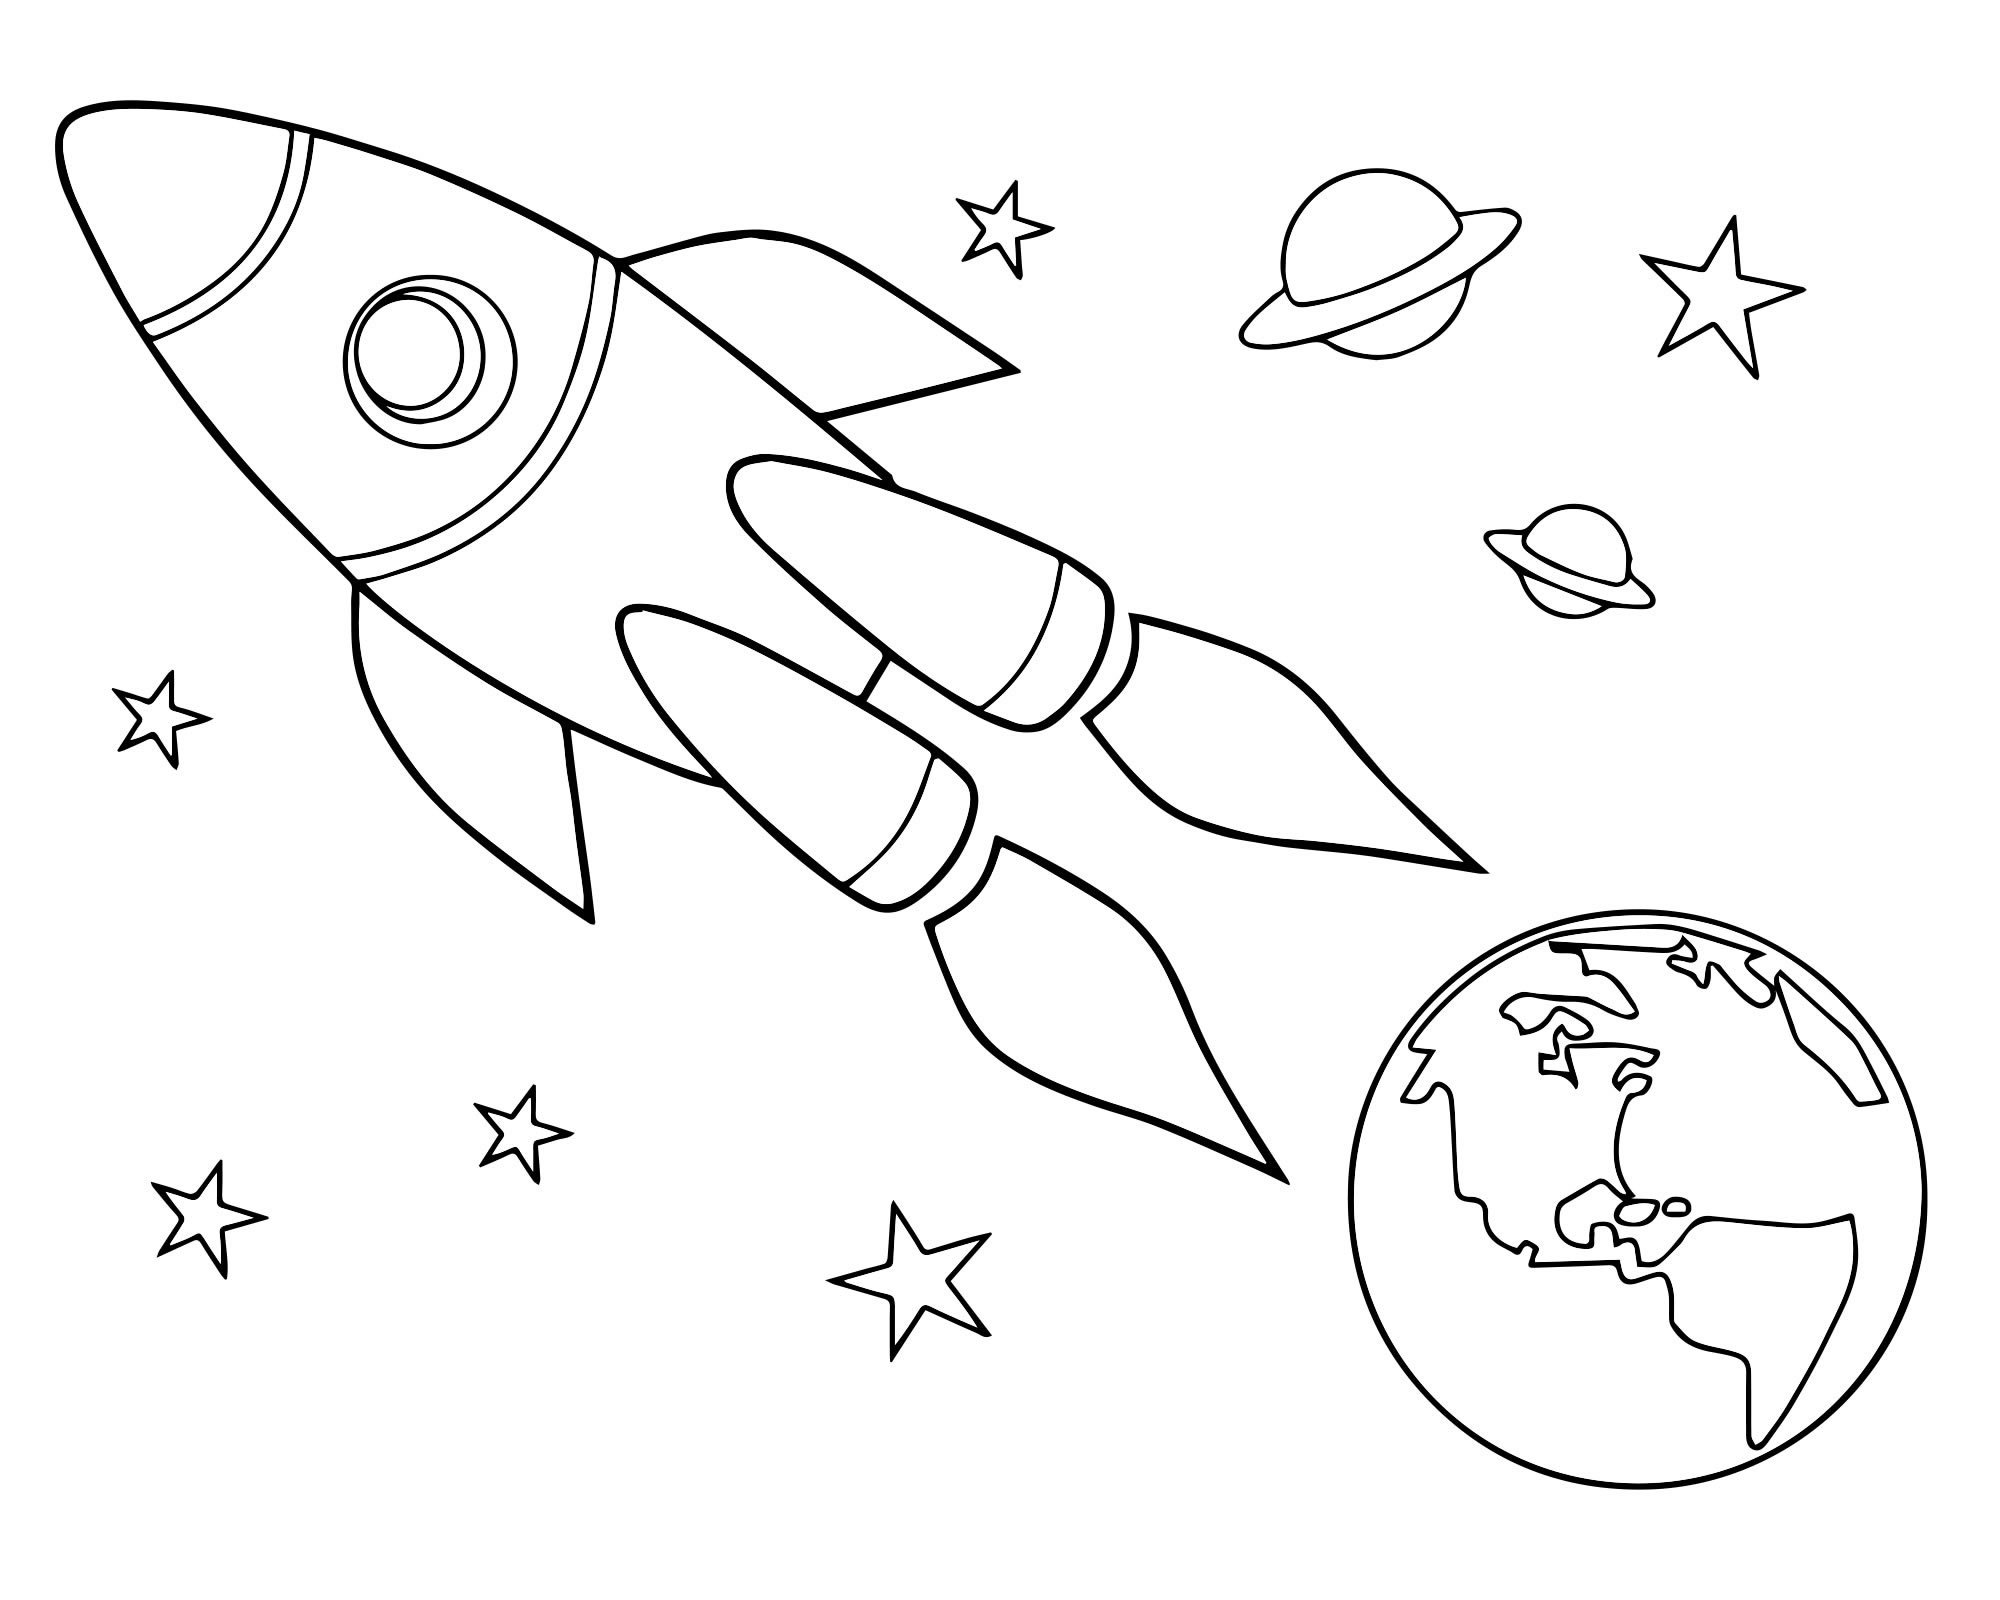 Картинки ко дню космонавтики для детей. Космос раскраска для детей. Раскраска день космонавтики для детей. Трафареты на тему космоса для детей. Раскраска для малышей. Космос.